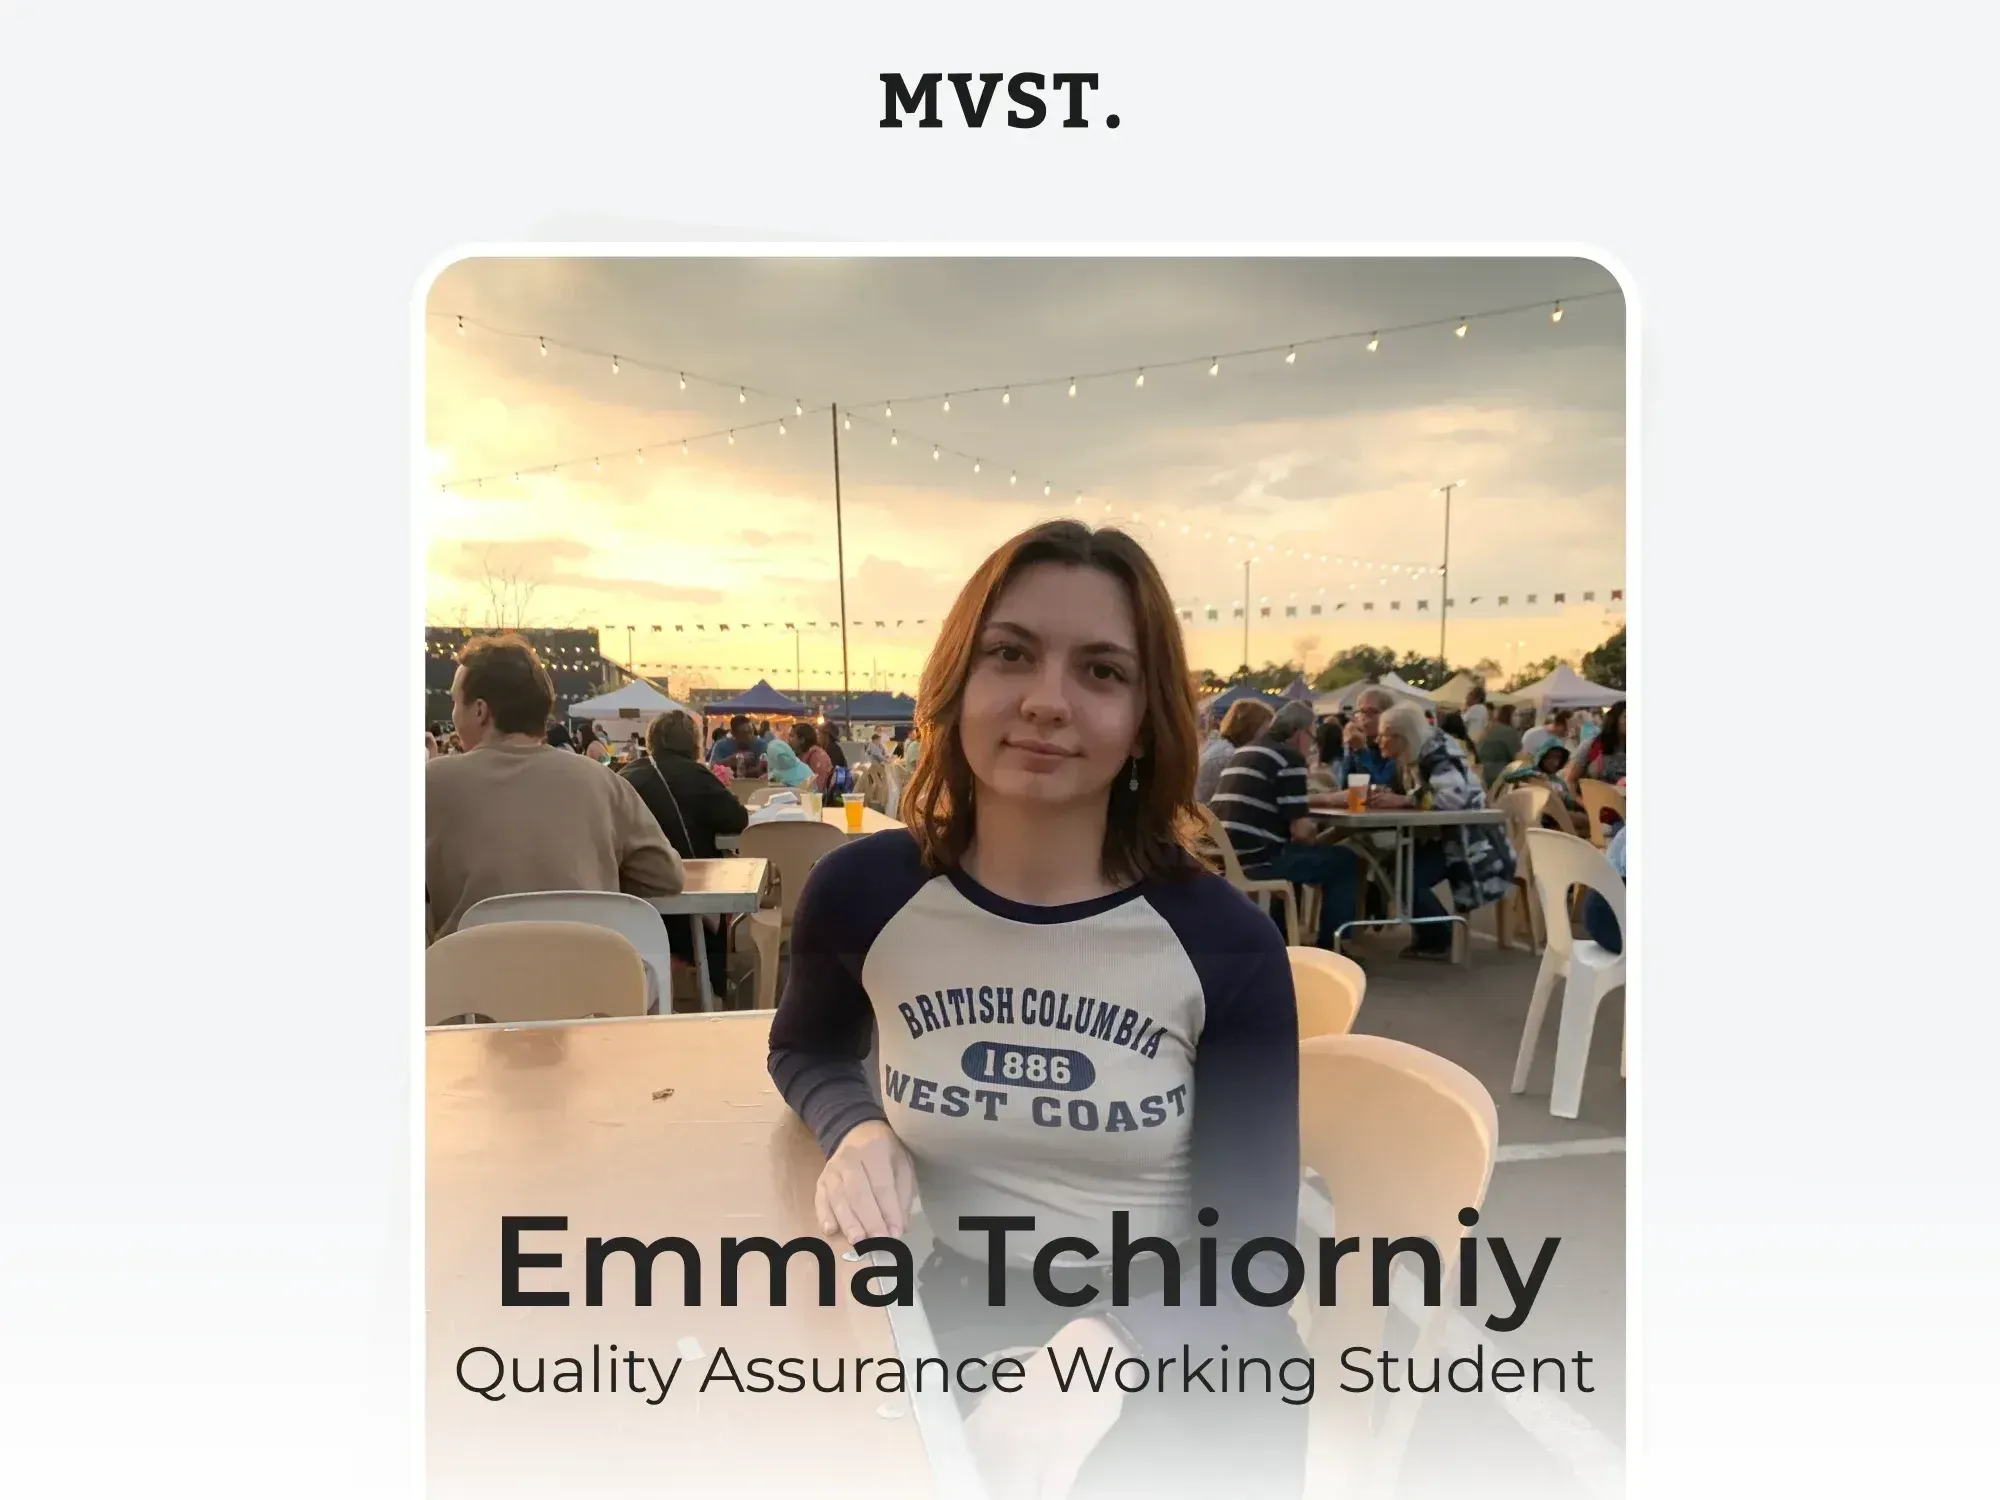 Willkommen bei MVST, Emma!